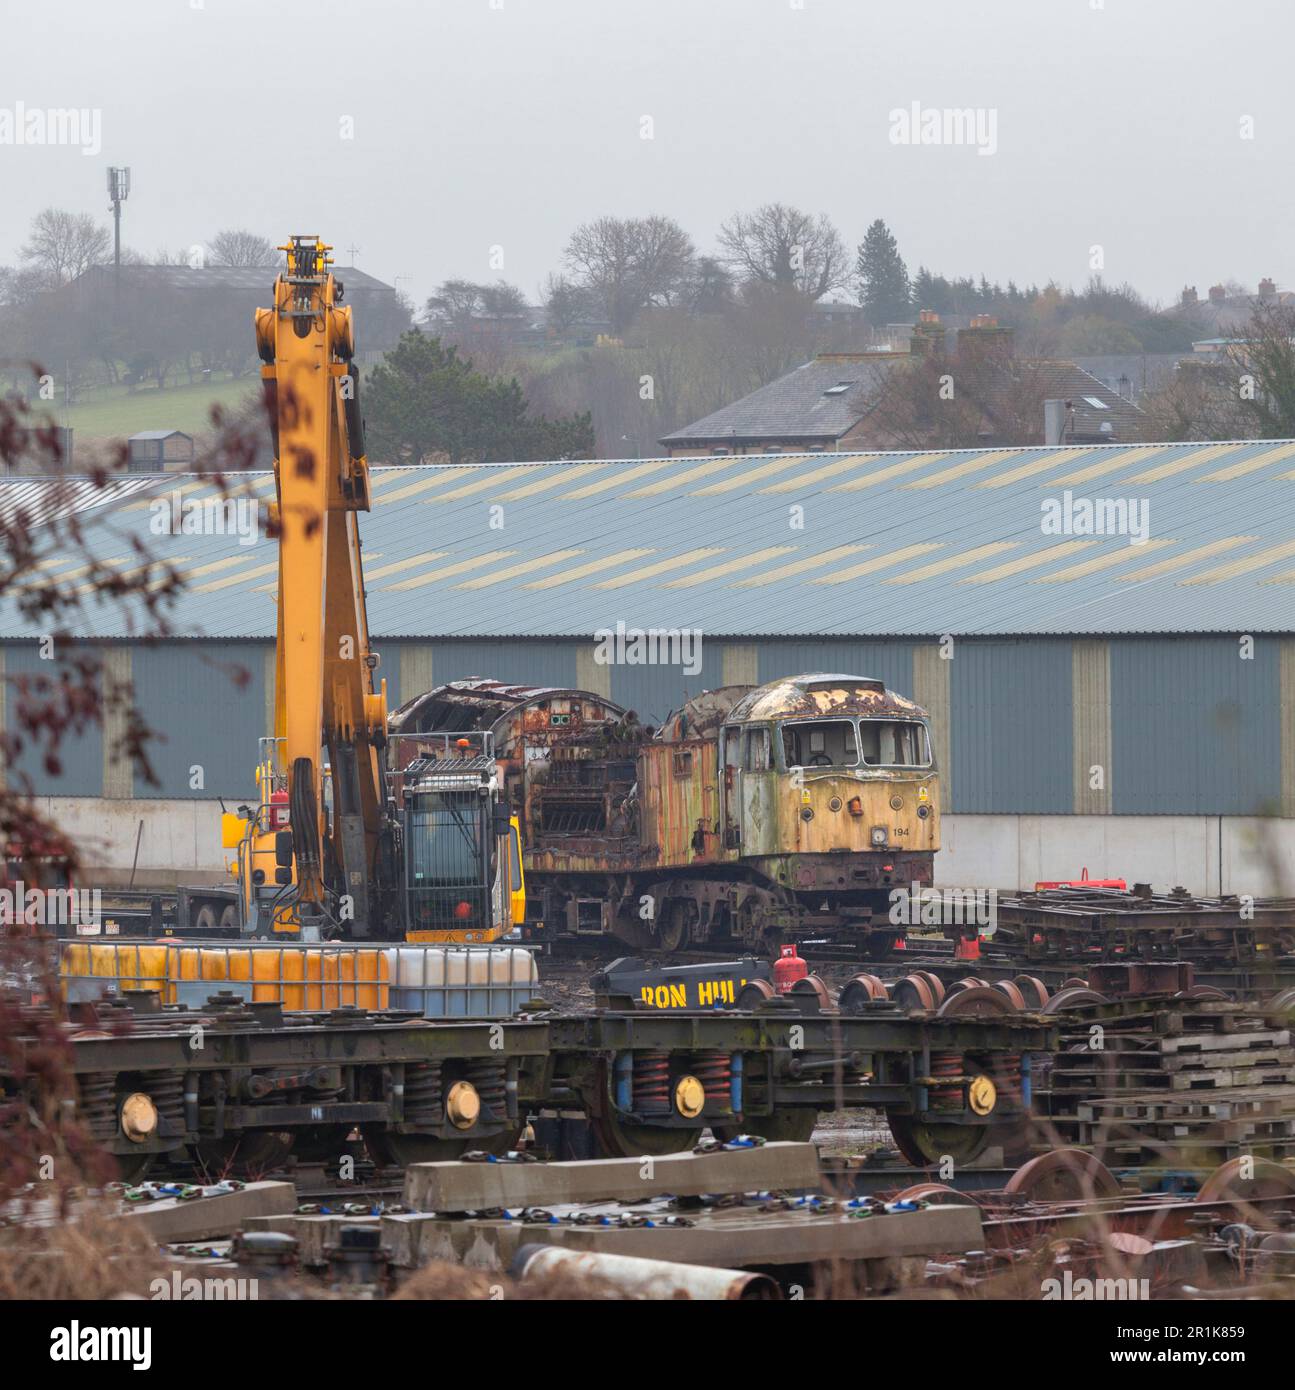 Locomotiva 47194 diesel della classe 47 demolita per rottamazione da Ron Hull nel deposito della West Coast Railways a Carnforth Foto Stock